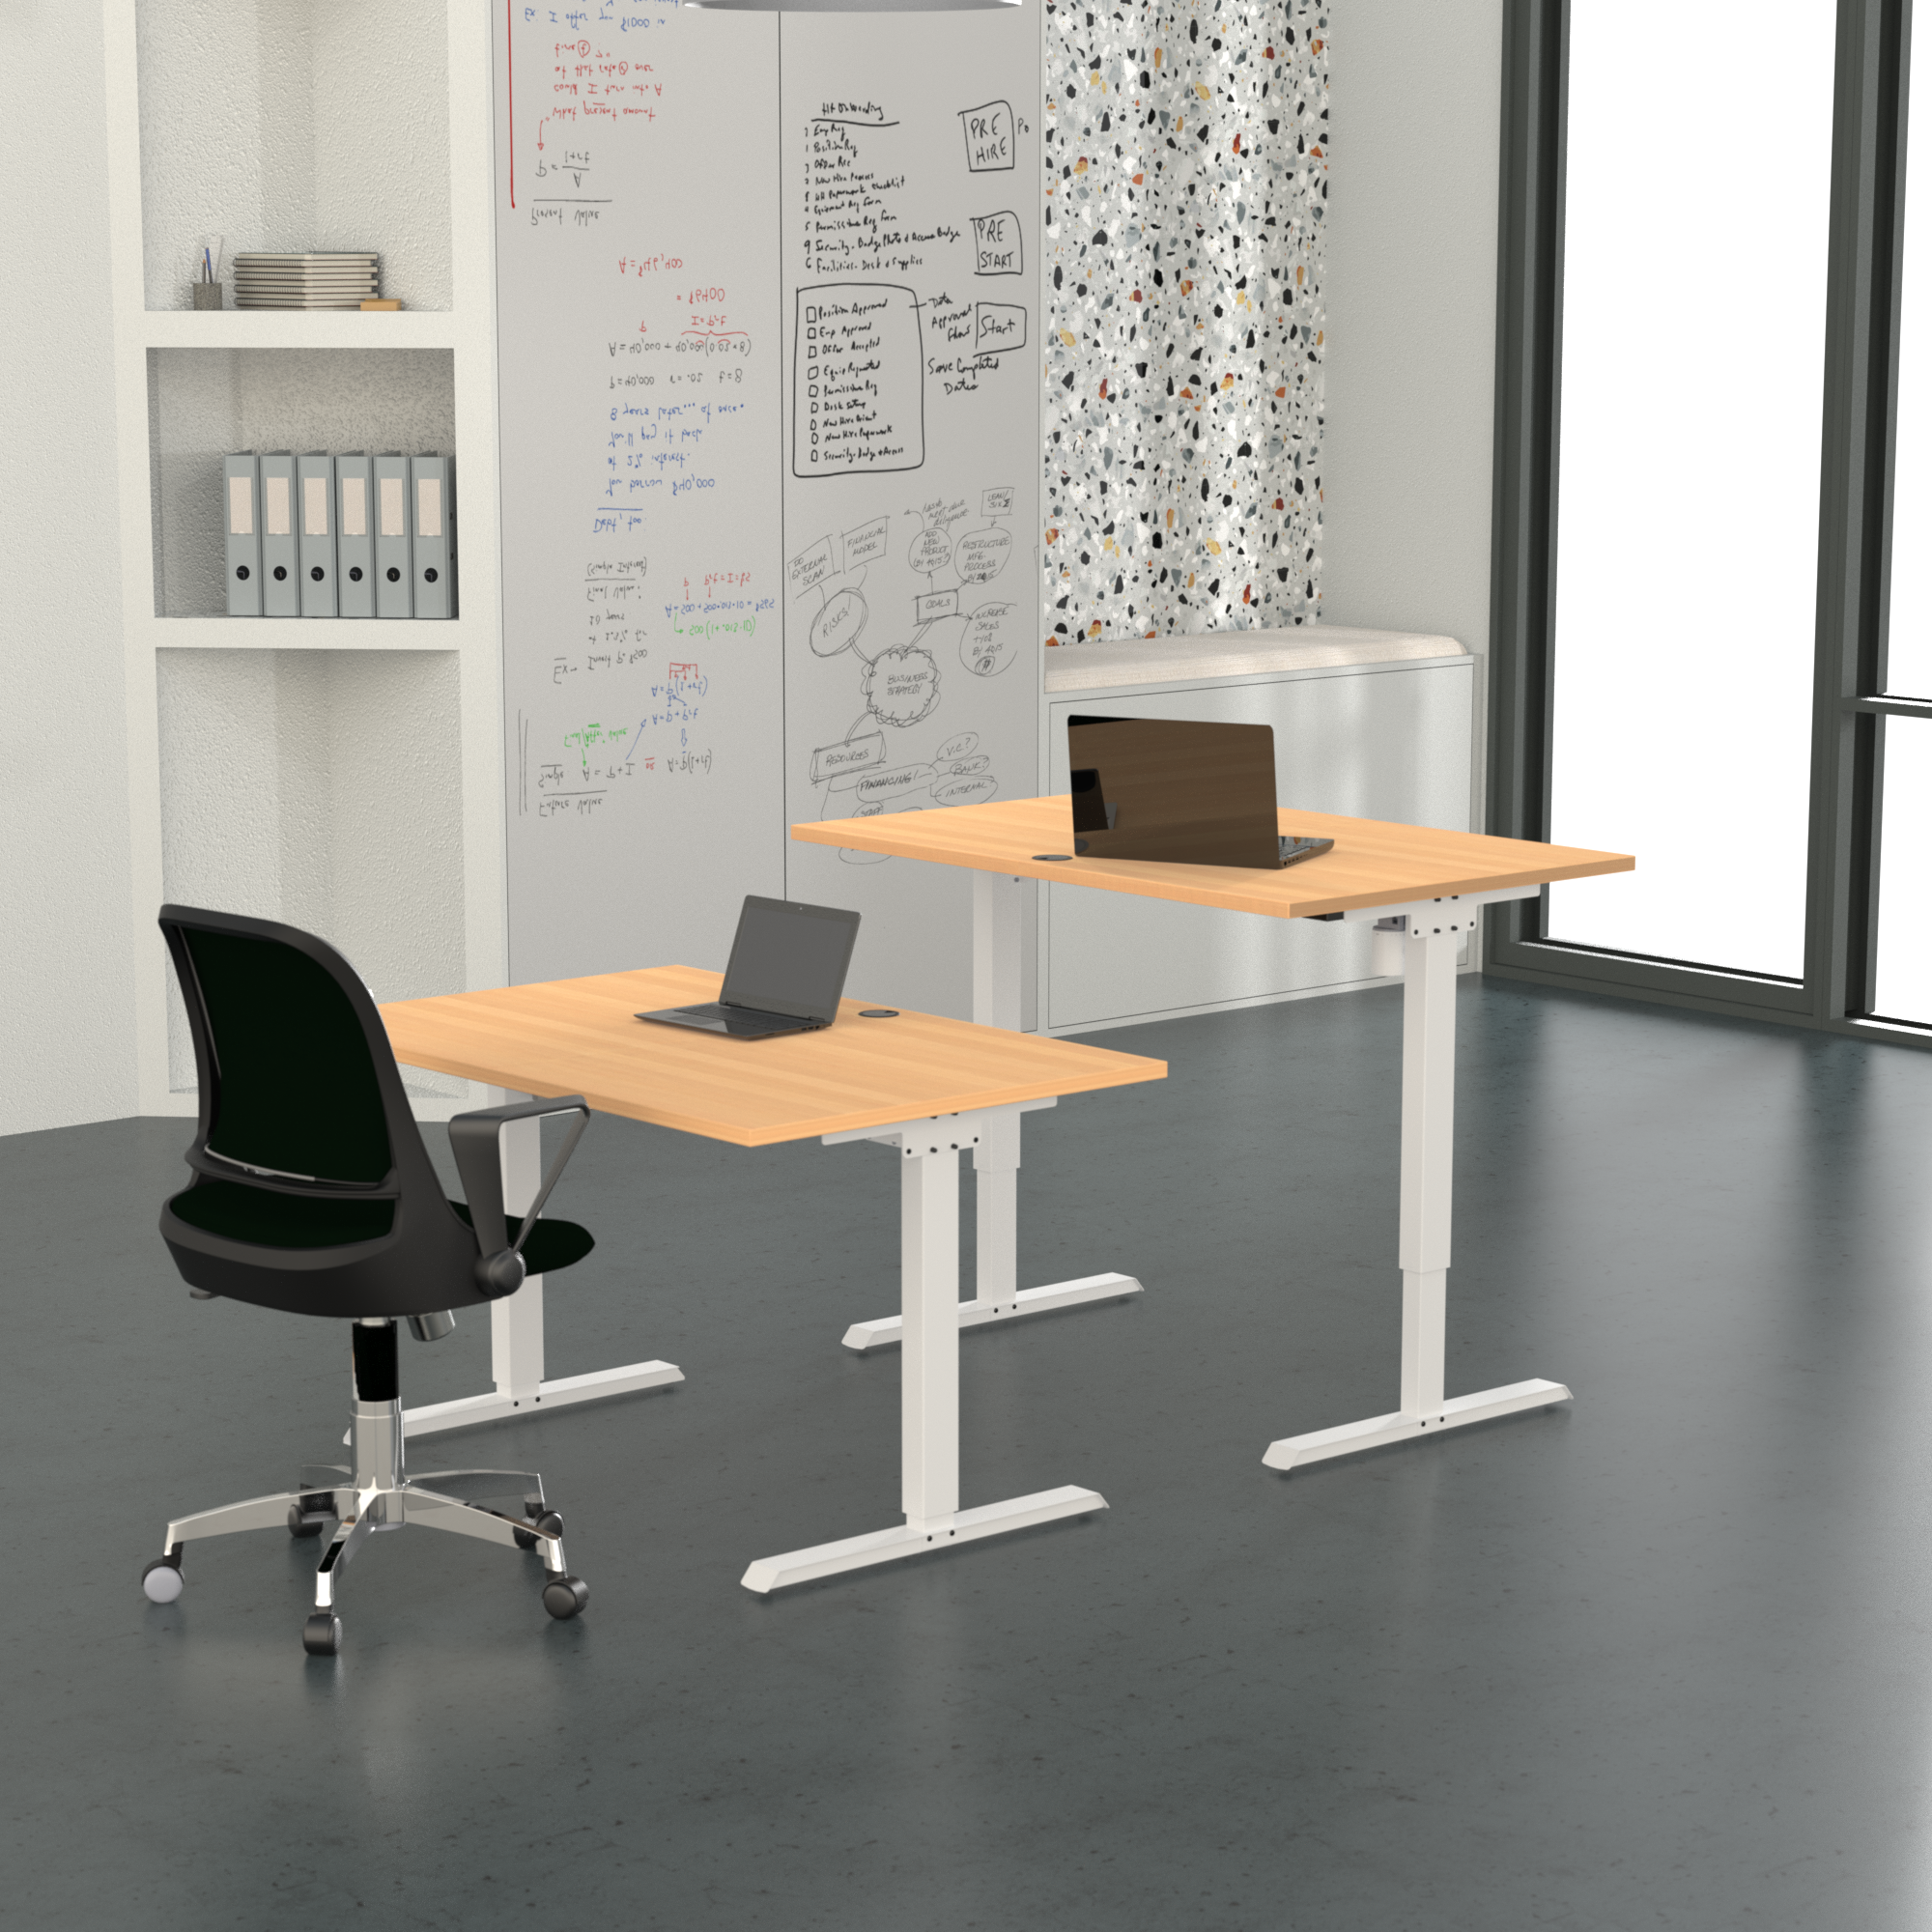 Schreibtisch steh/sitz | 160x80 cm | Buche mit weißem Gestell